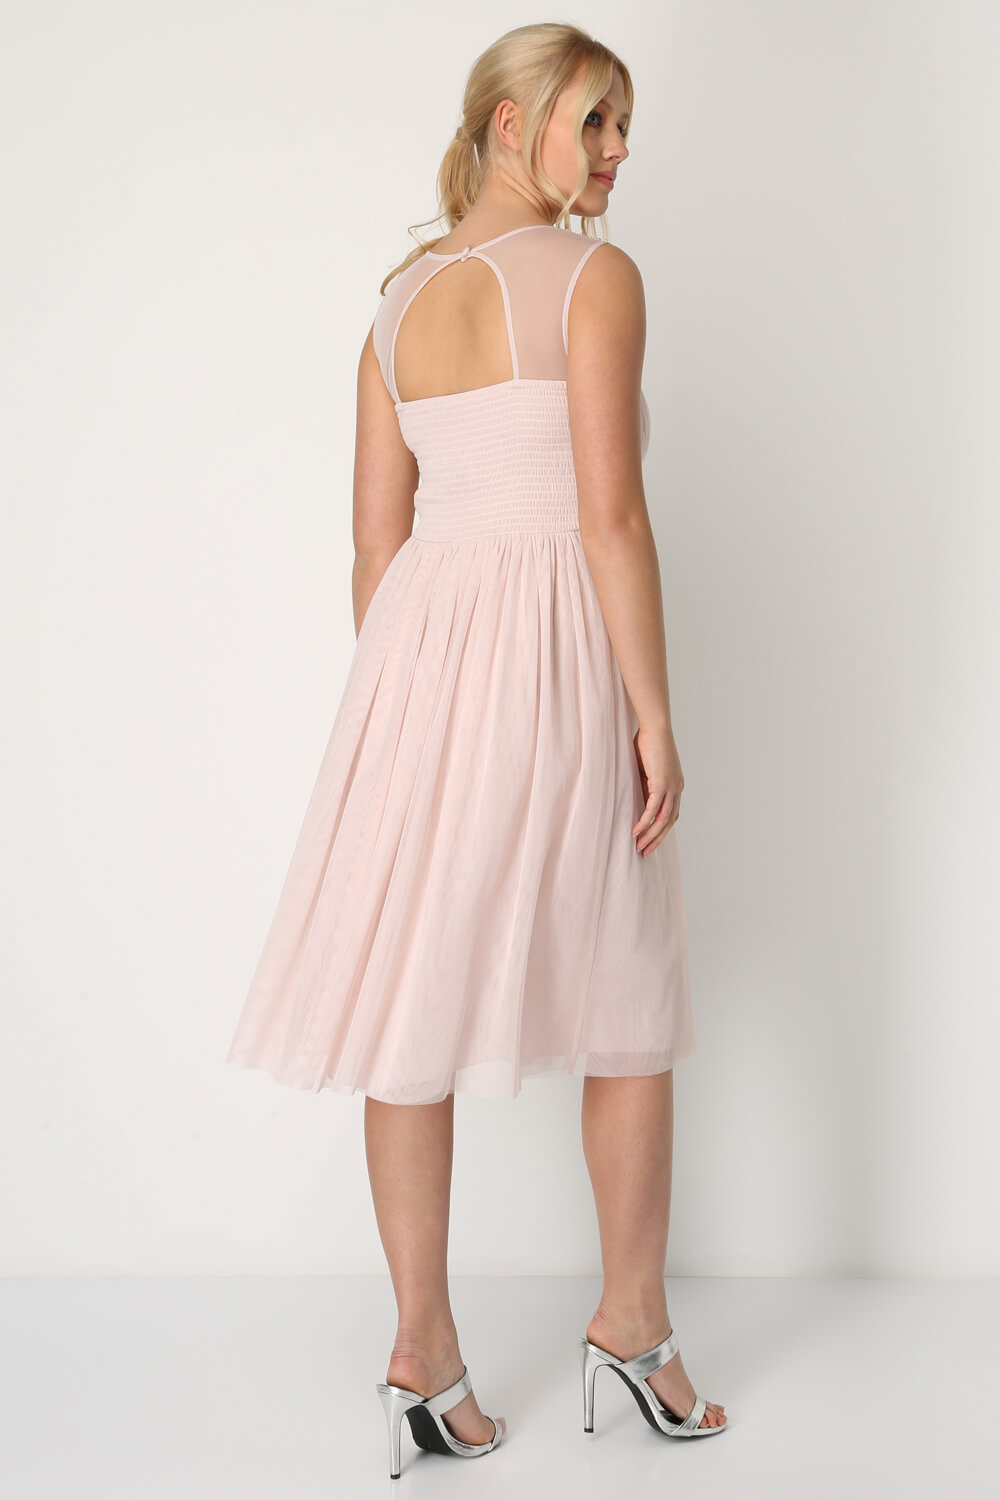 Light Pink Bead Embellished Knee Length Dress, Image 2 of 5